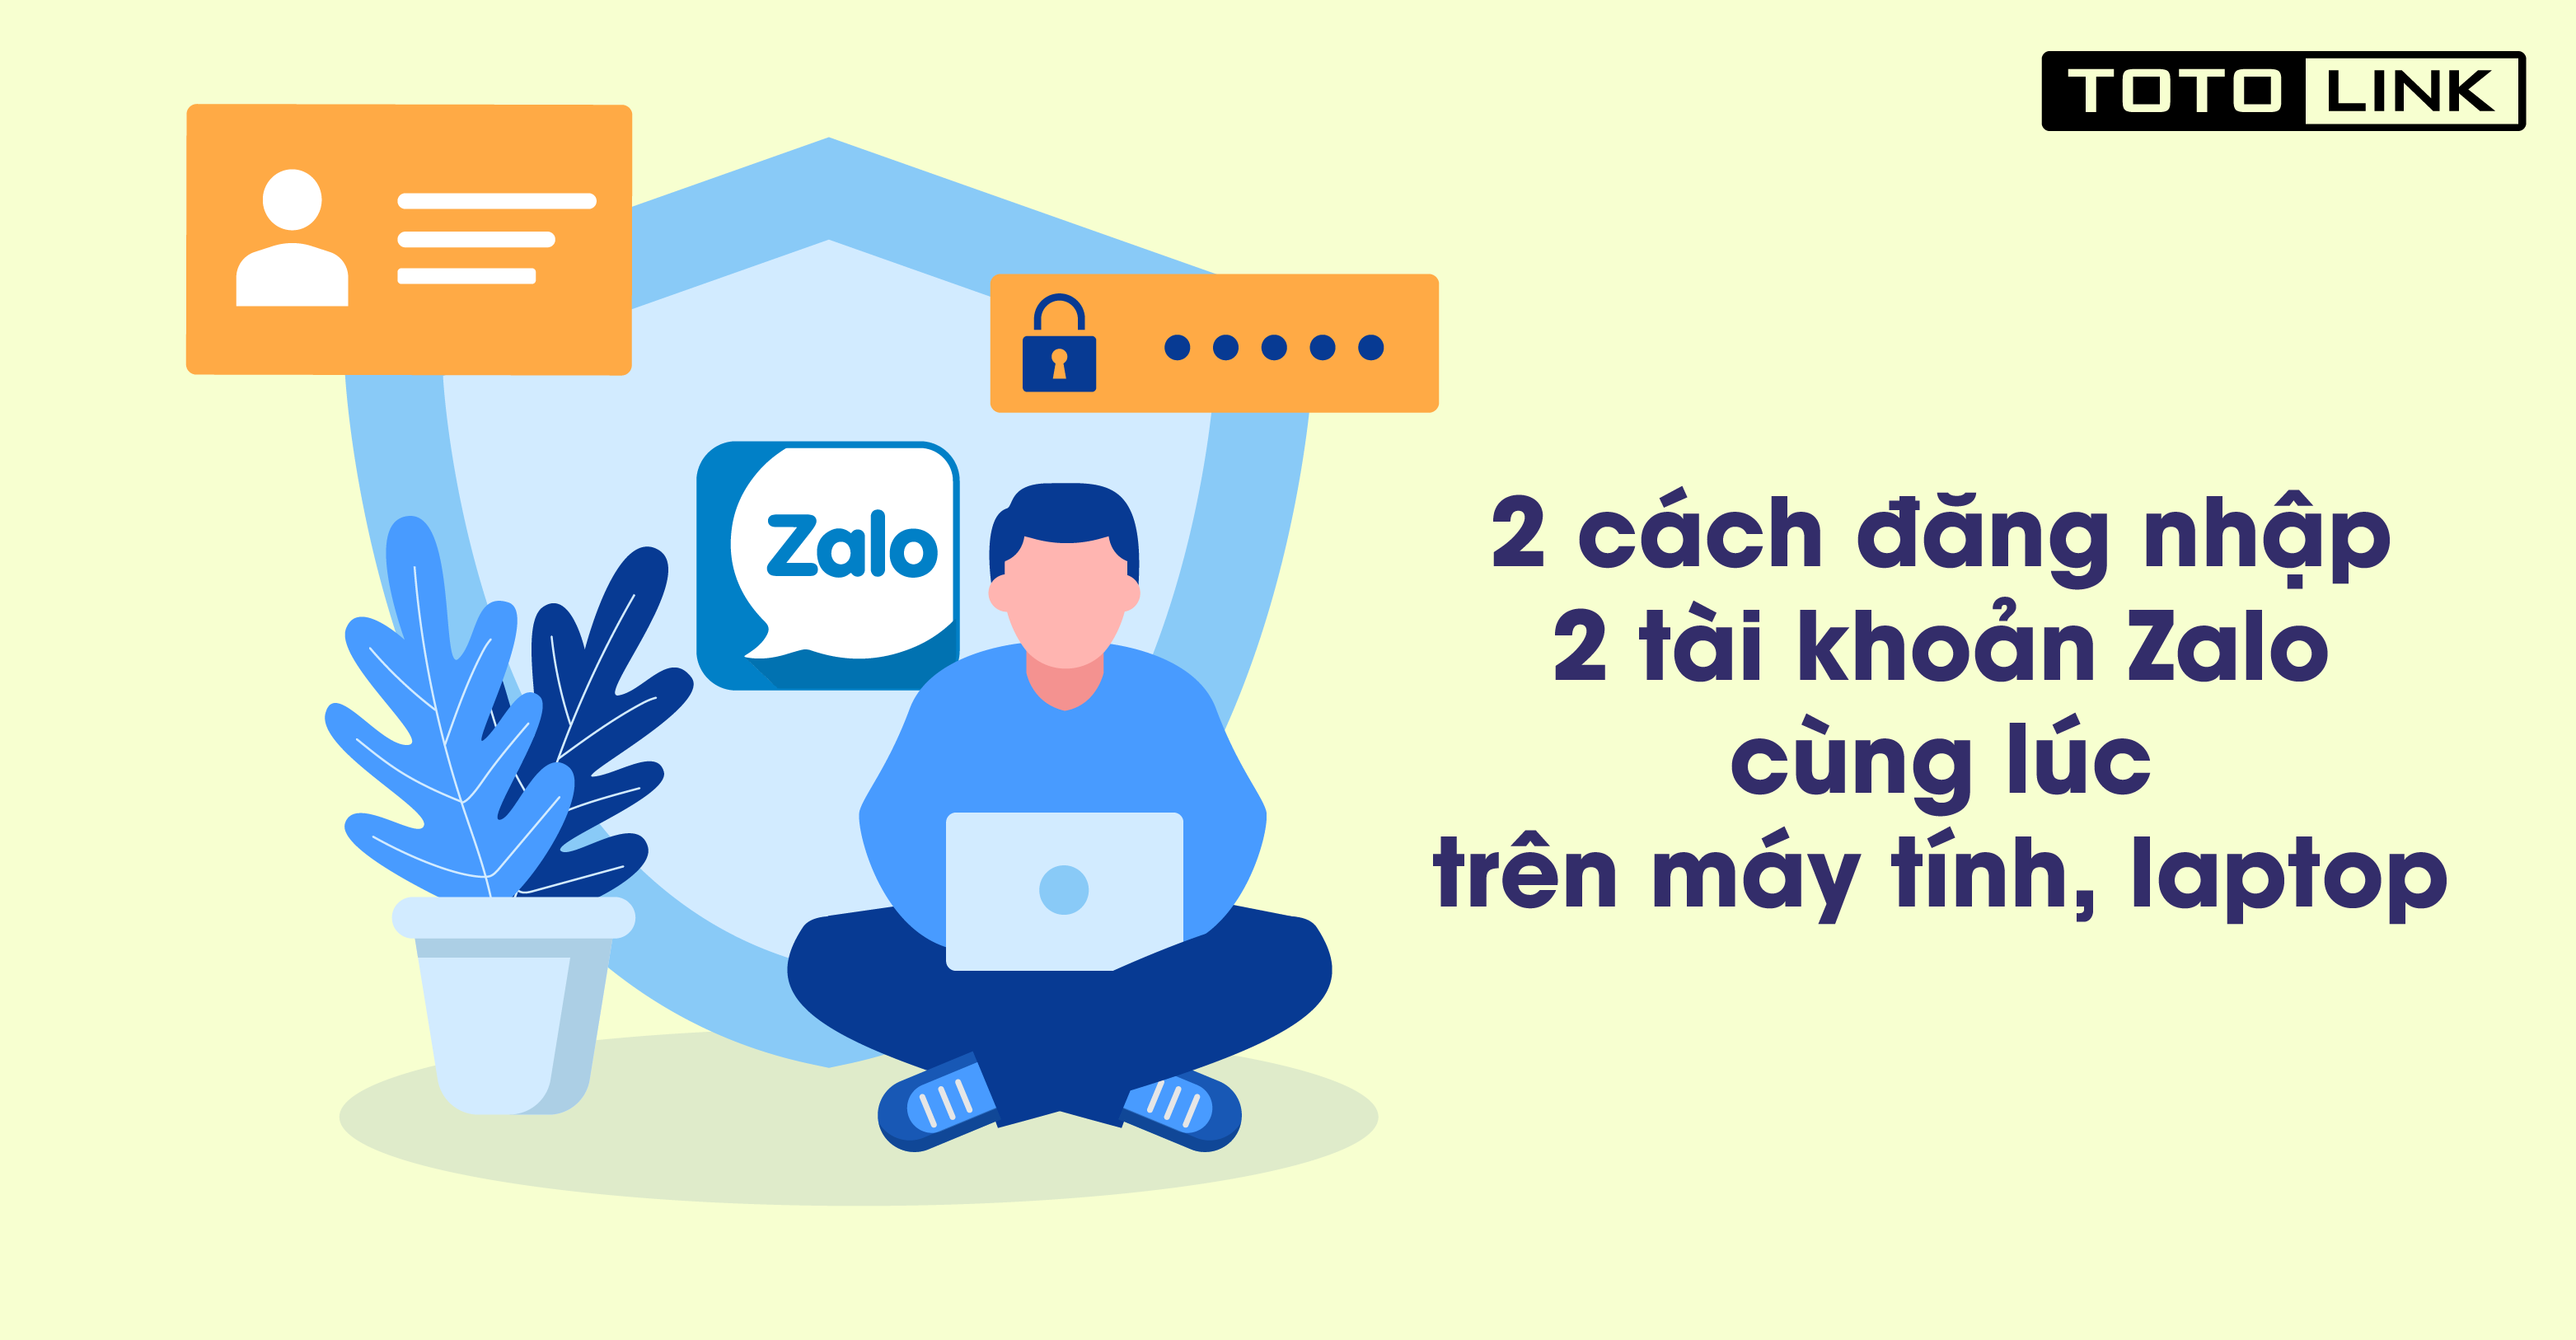 Hướng dẫn 2 cách đăng nhập 2 tài khoản Zalo cùng lúc trên máy tính, laptop - TOTOLINK Việt Nam